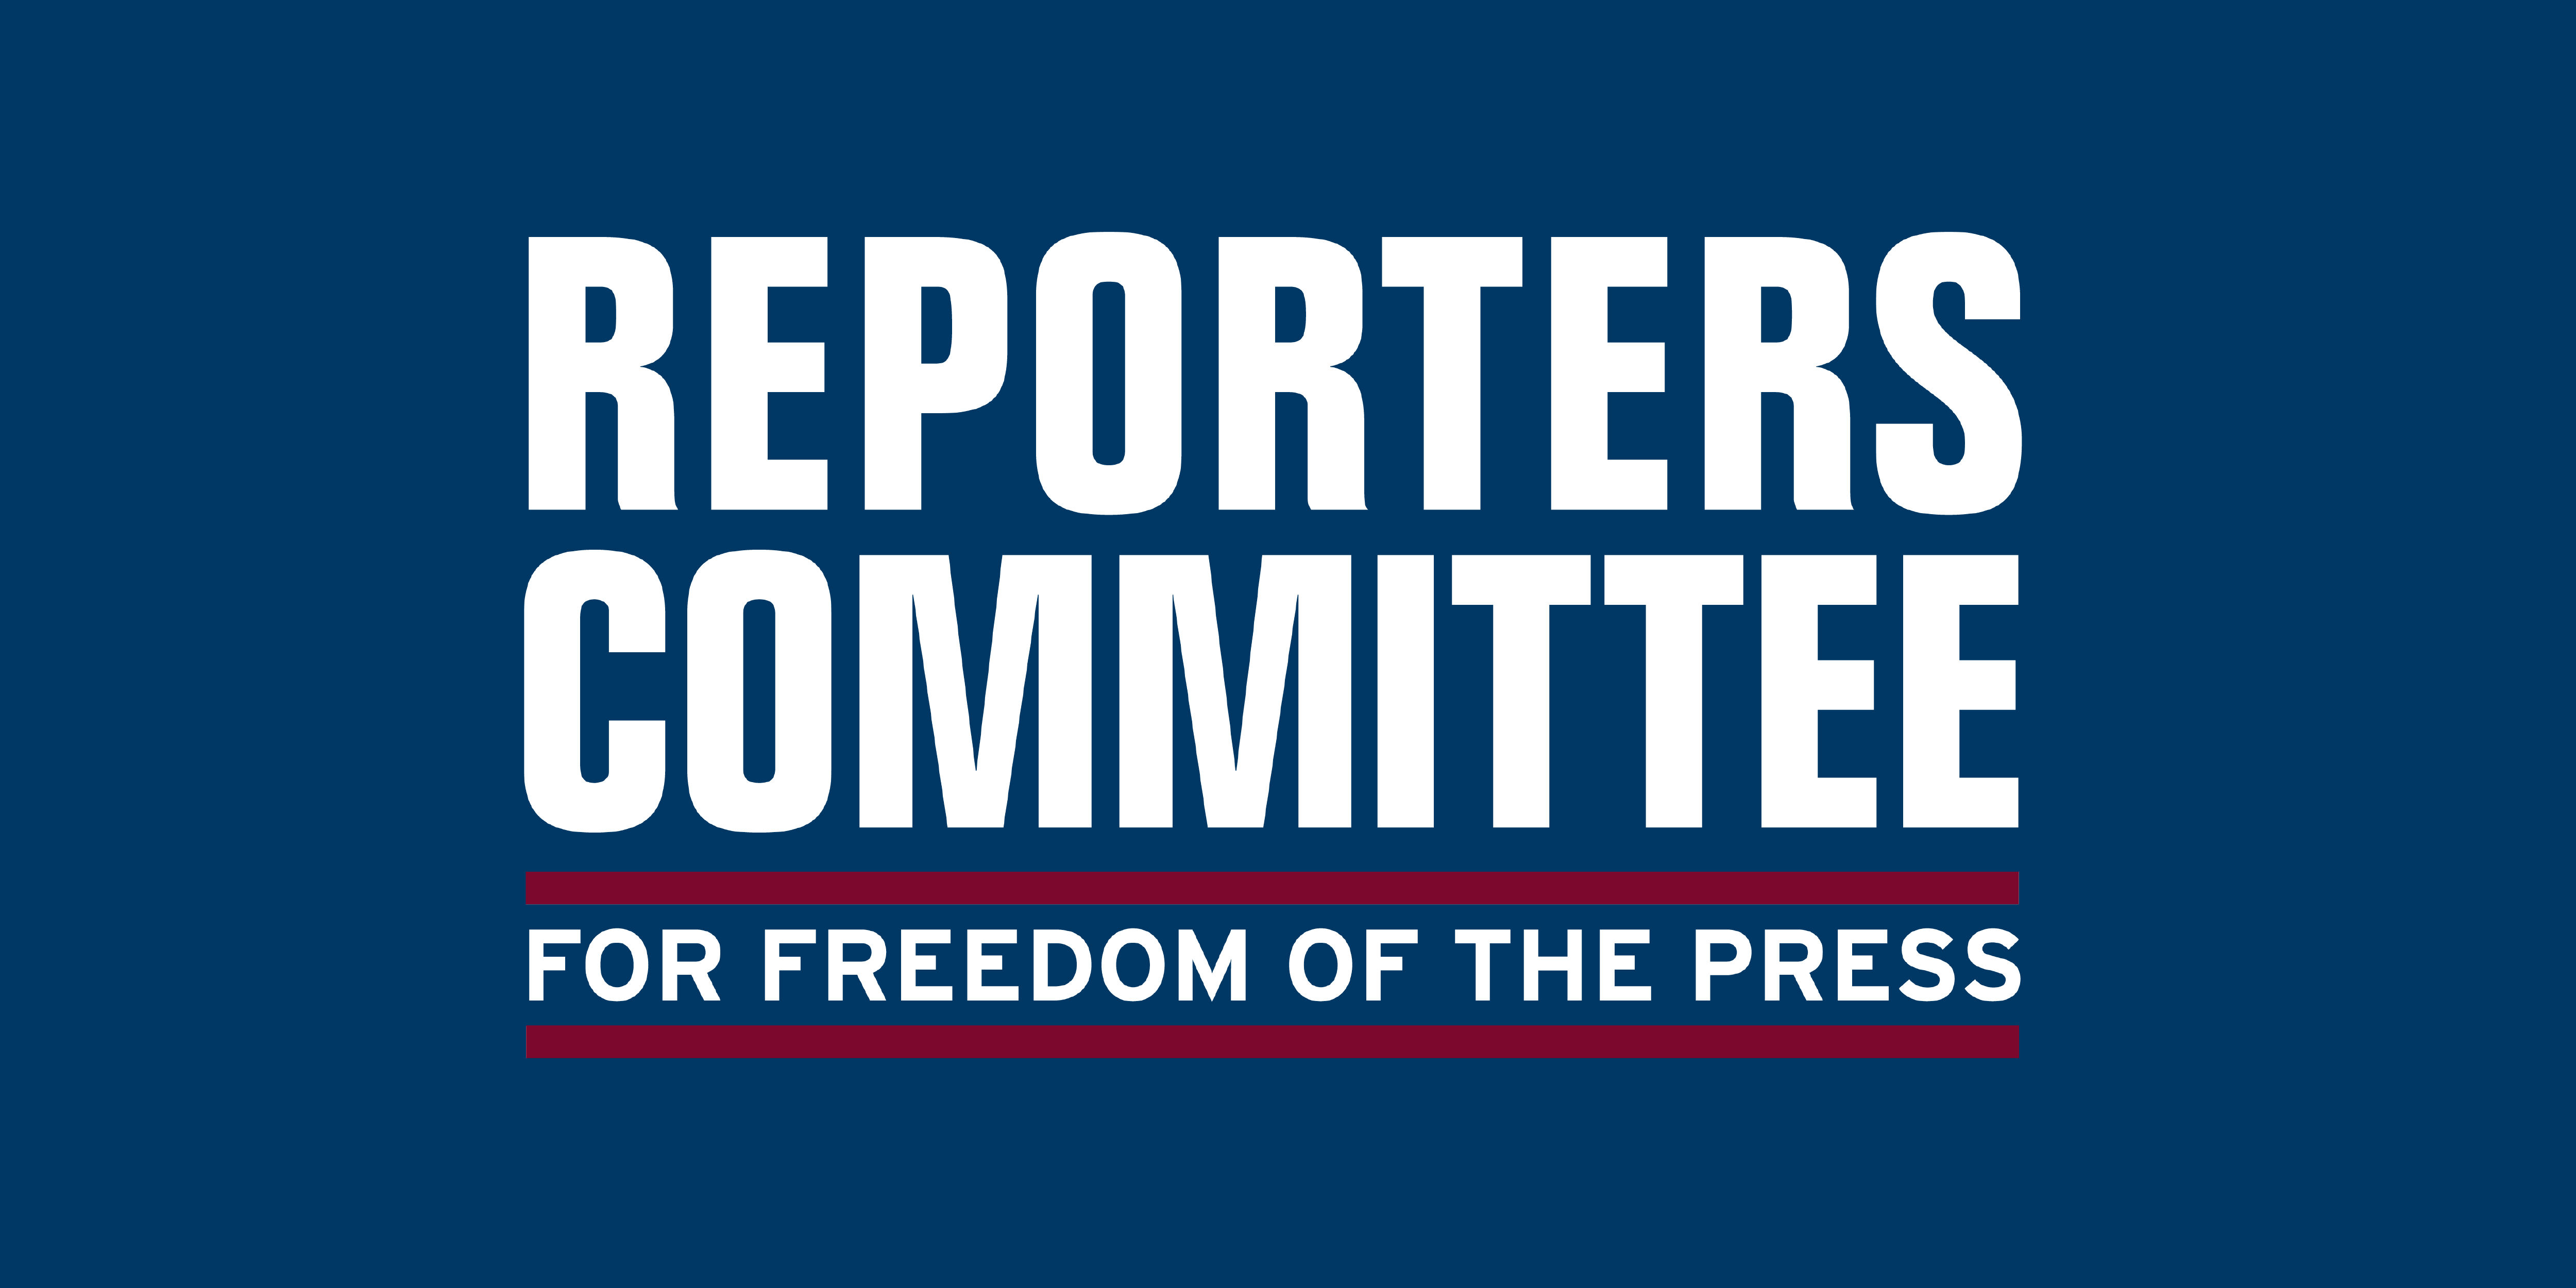 freedom of press amendment